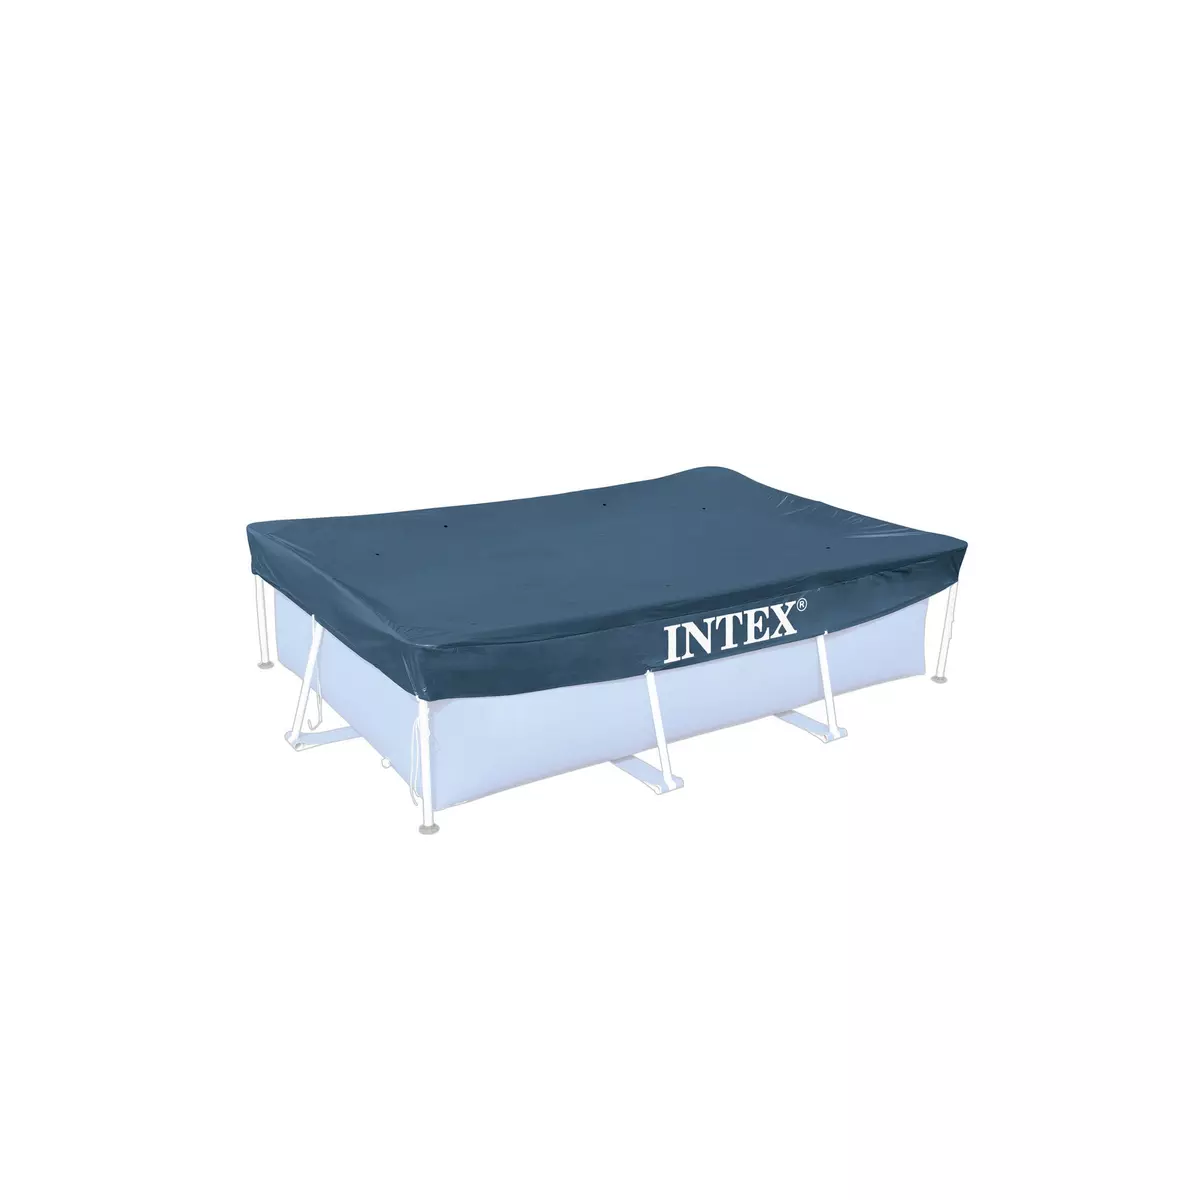 INTEX Bâche de protection piscine tubulaire 300 x 200 cm - Bleu